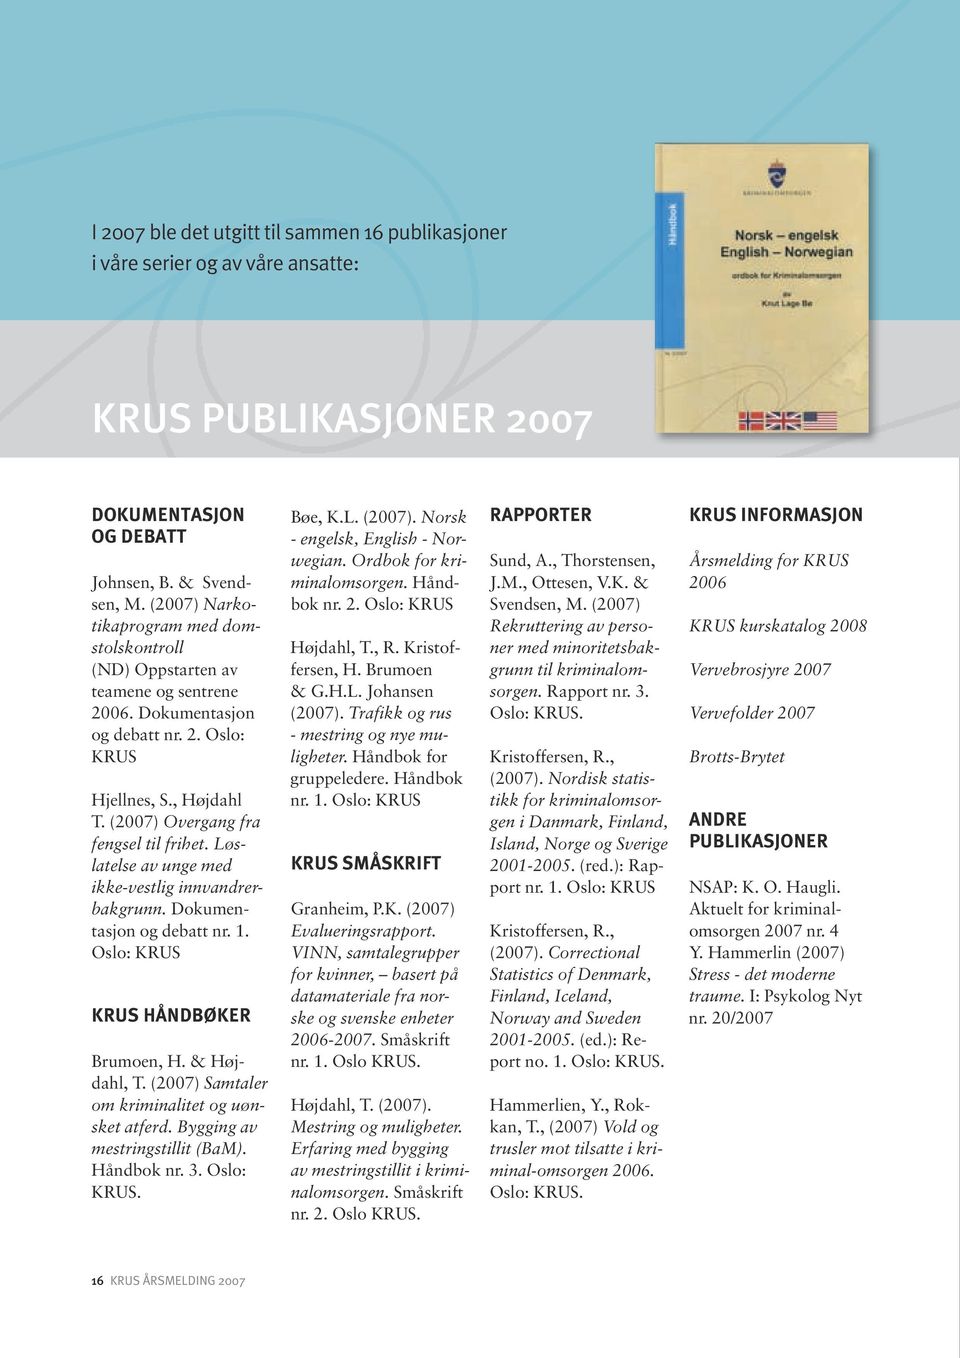 Løslatelse av unge med ikke-vestlig innvandrerbakgrunn. Dokumentasjon og debatt nr. 1. Oslo: KRUS KRUS HÅNDBØKER Brumoen, H. & Højdahl, T. (2007) Samtaler om kriminalitet og uønsket atferd.